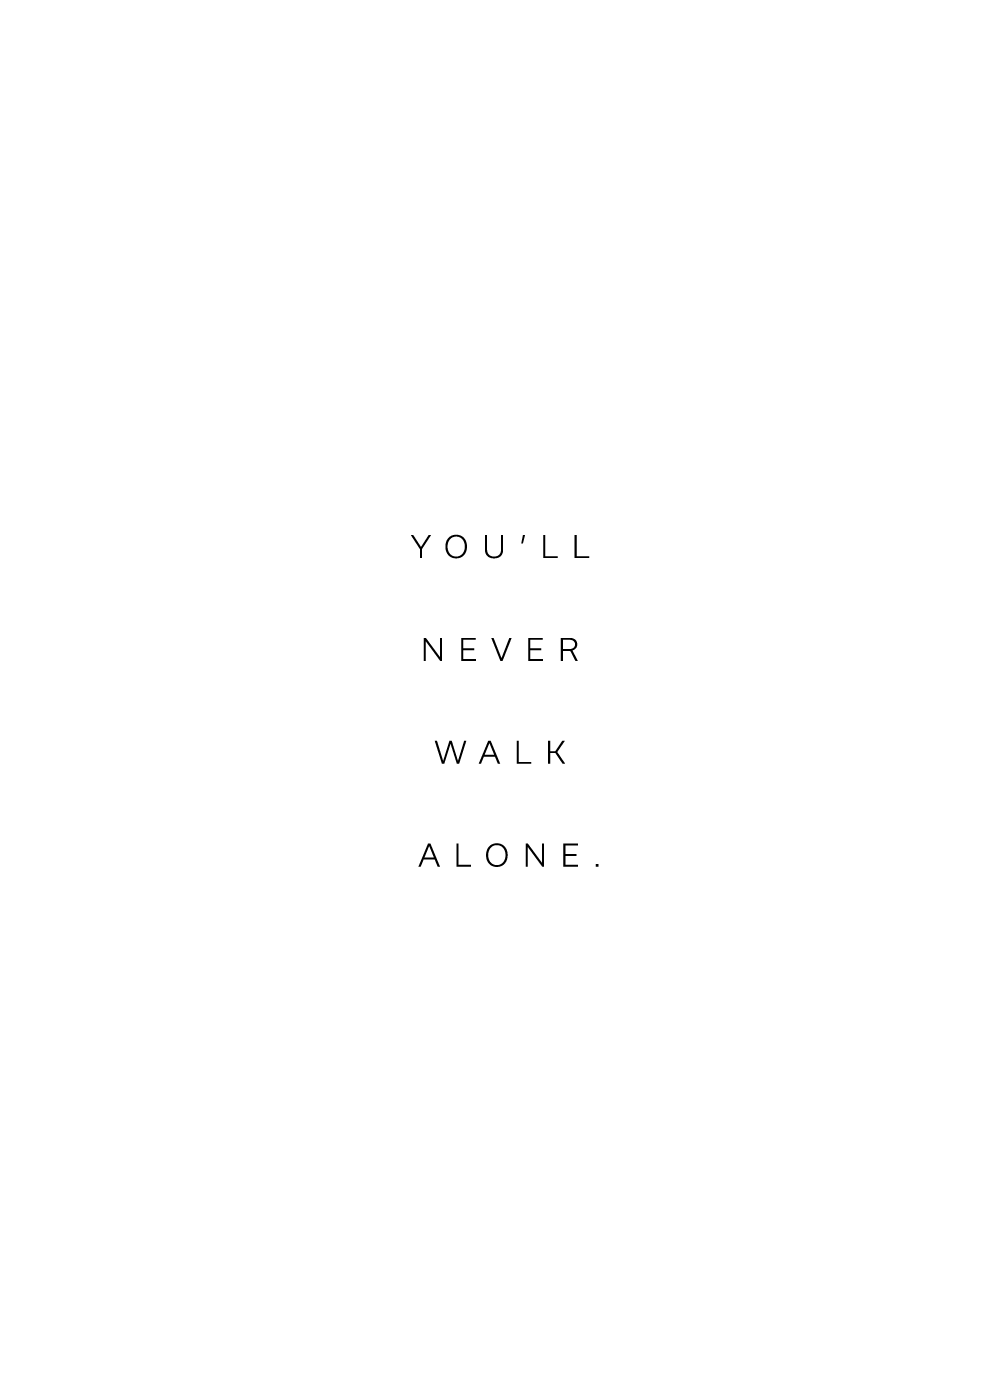 "You'll never walk alone" citatplakat